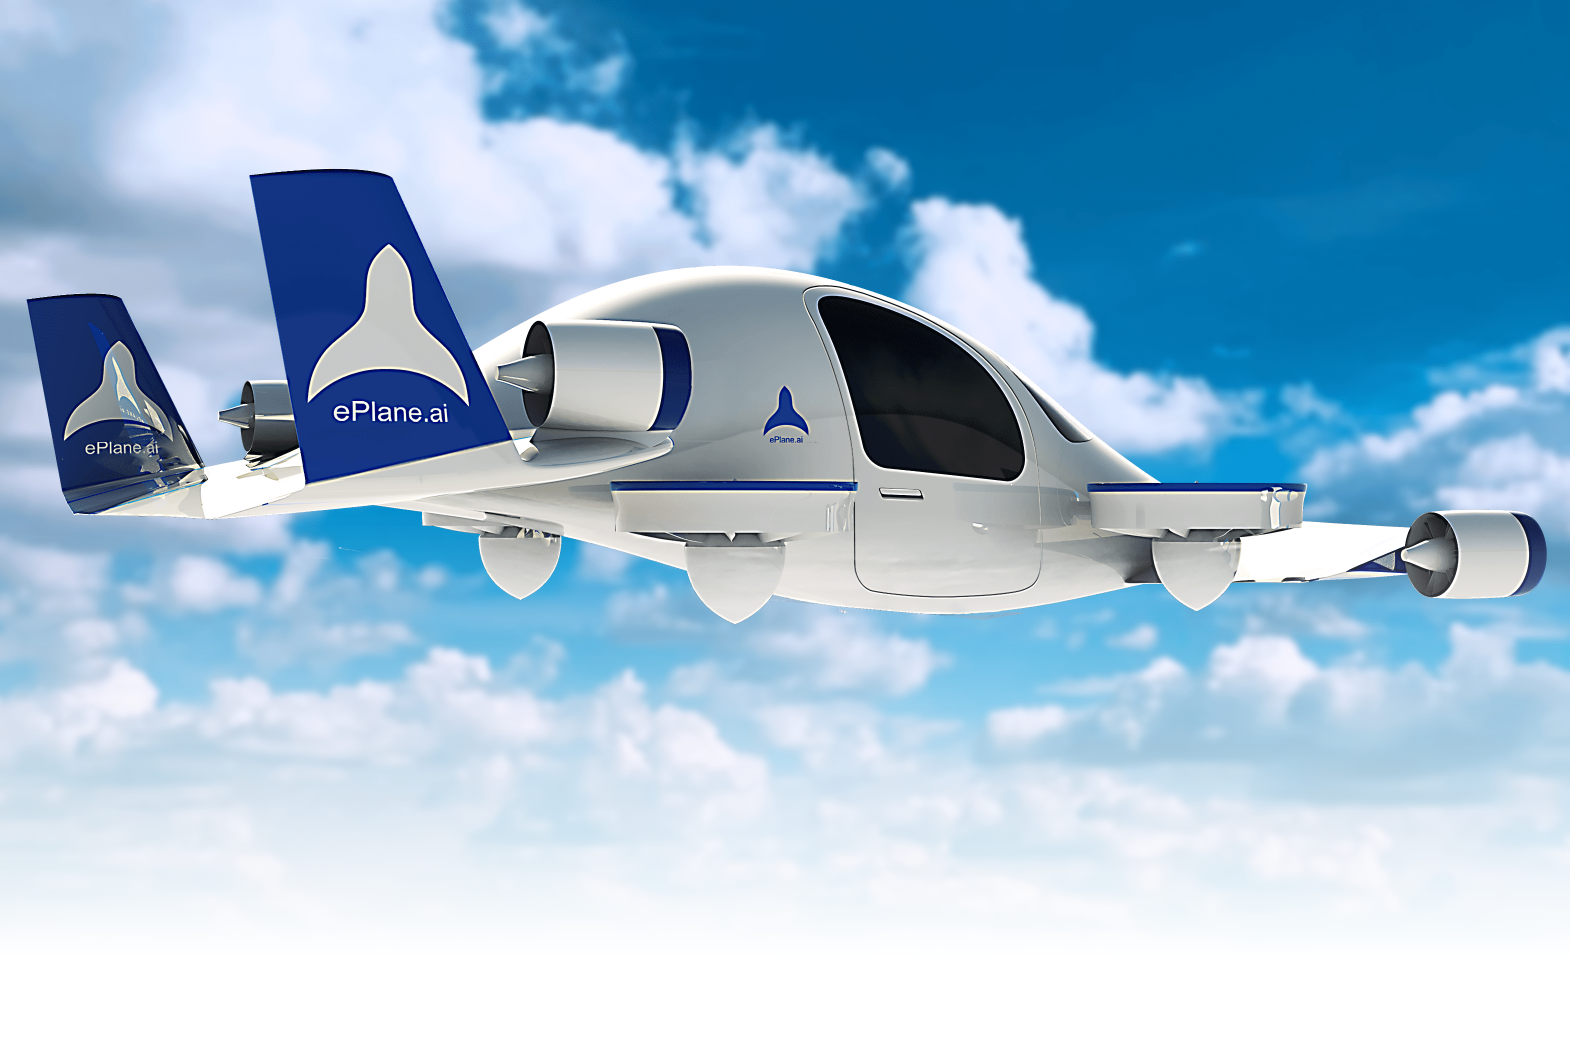 Il fondatore di ePlane ha dichiarato che l'azienda prevede di rilasciare il primo prototipo di aerotaxi entro la fine del 2024 e di lanciare la commercializzazione su larga scala in India nel 2027.